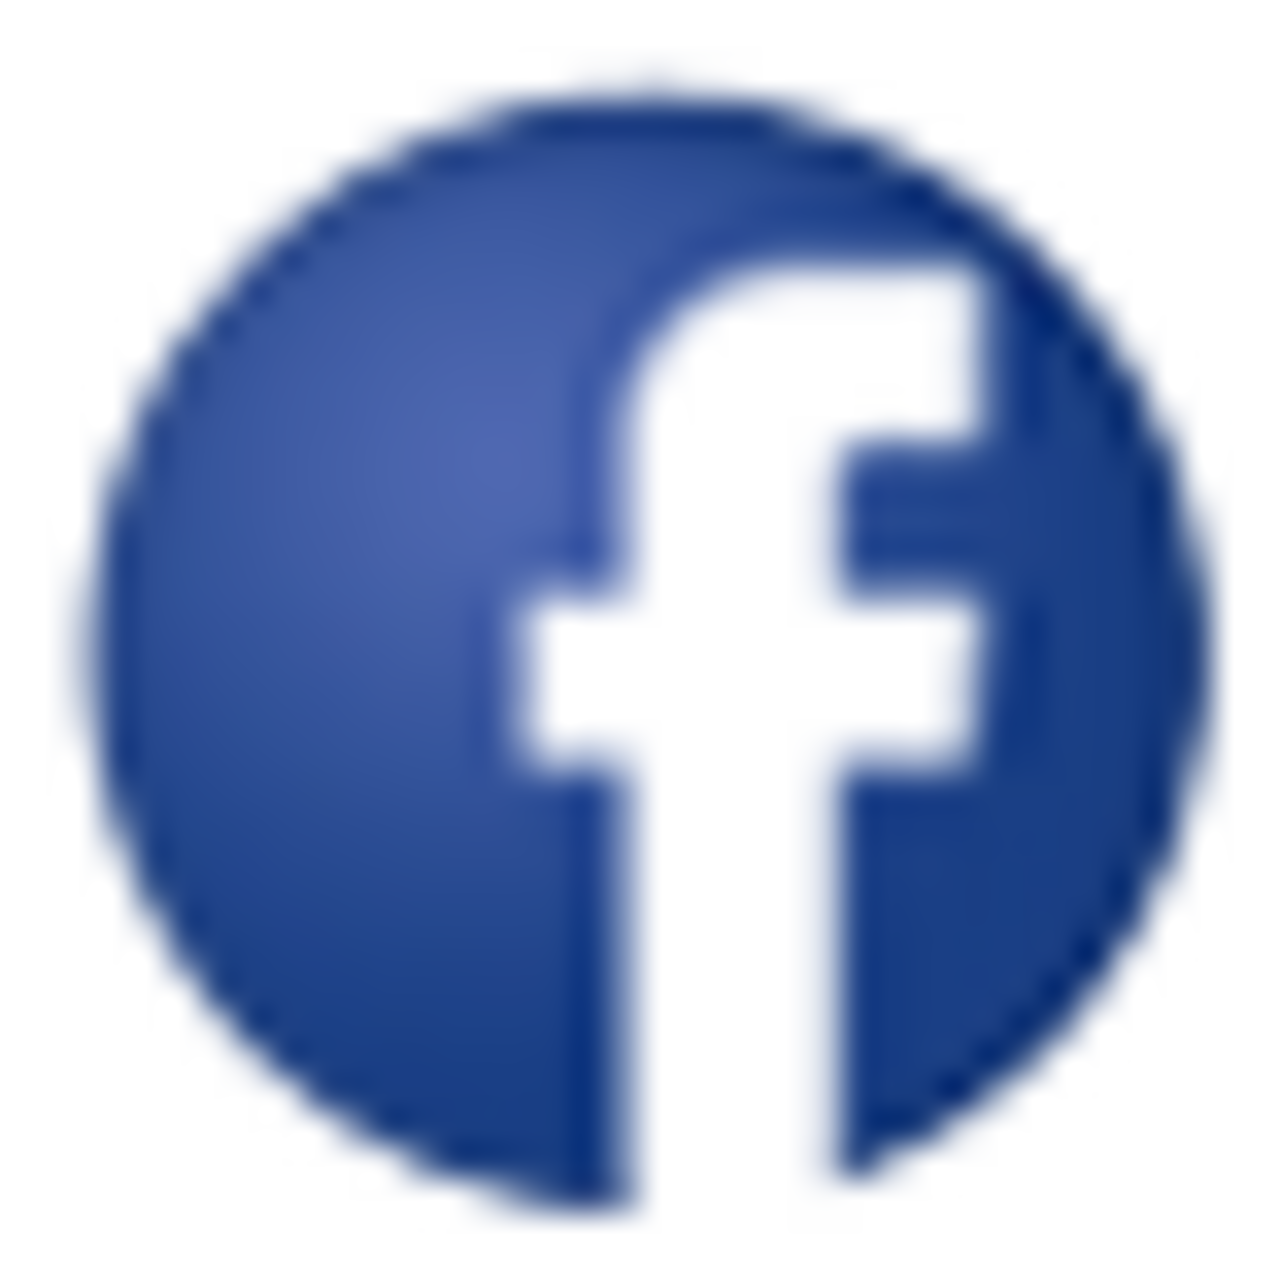 Logo Facebook_img